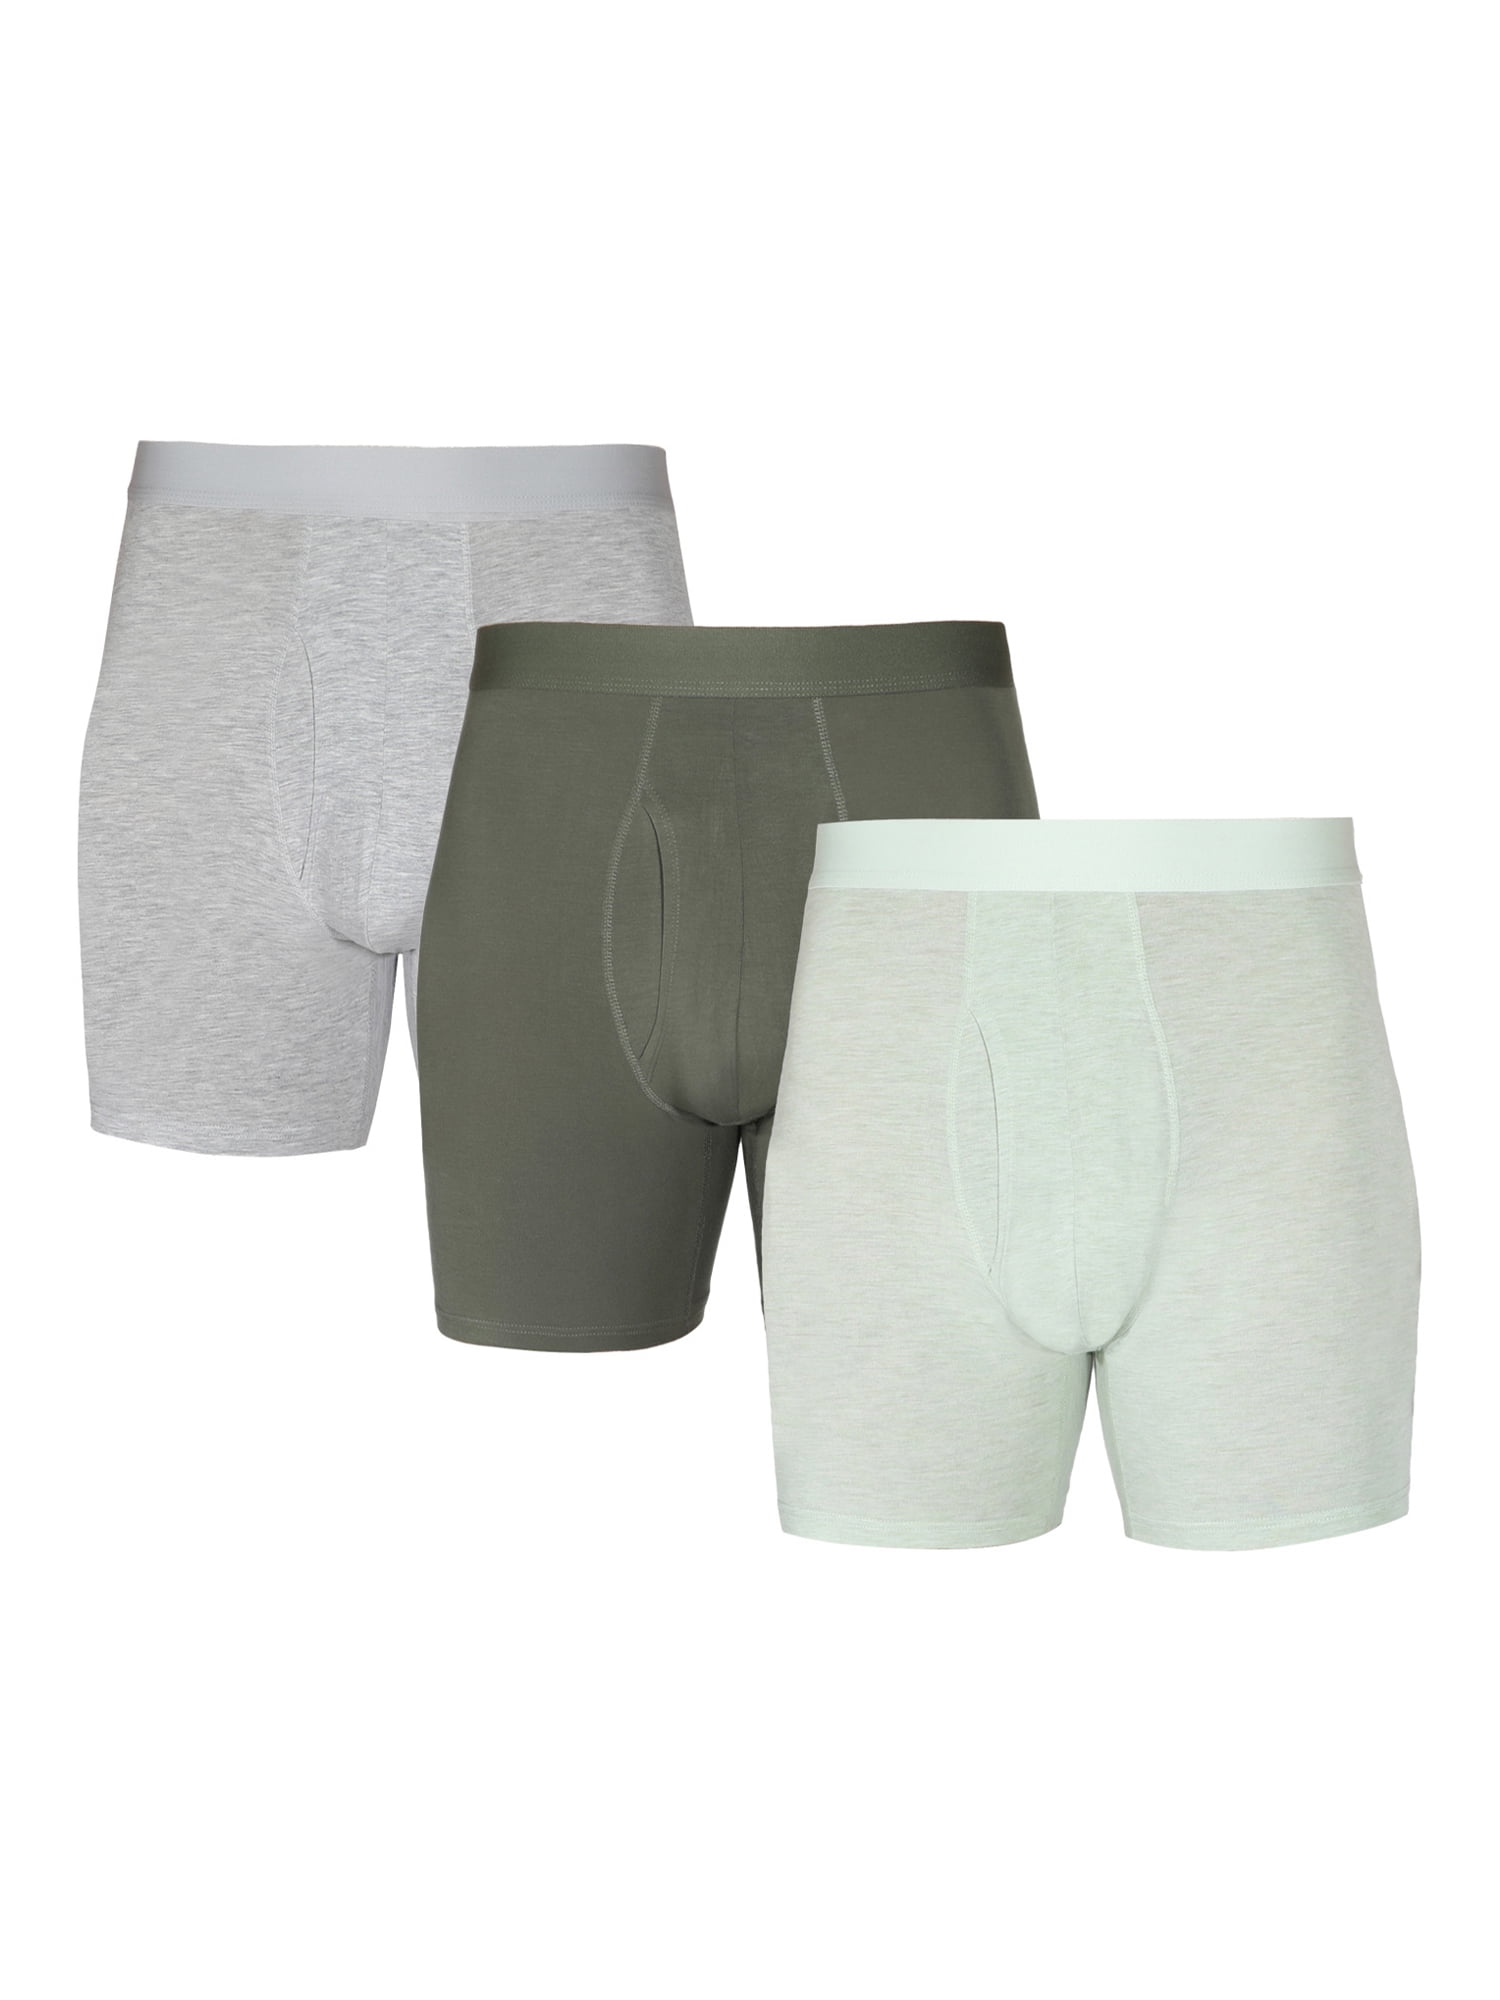 WHITE MEN'S TRUNK FASHION 2 SOFTY - Men's underwear PULLIN